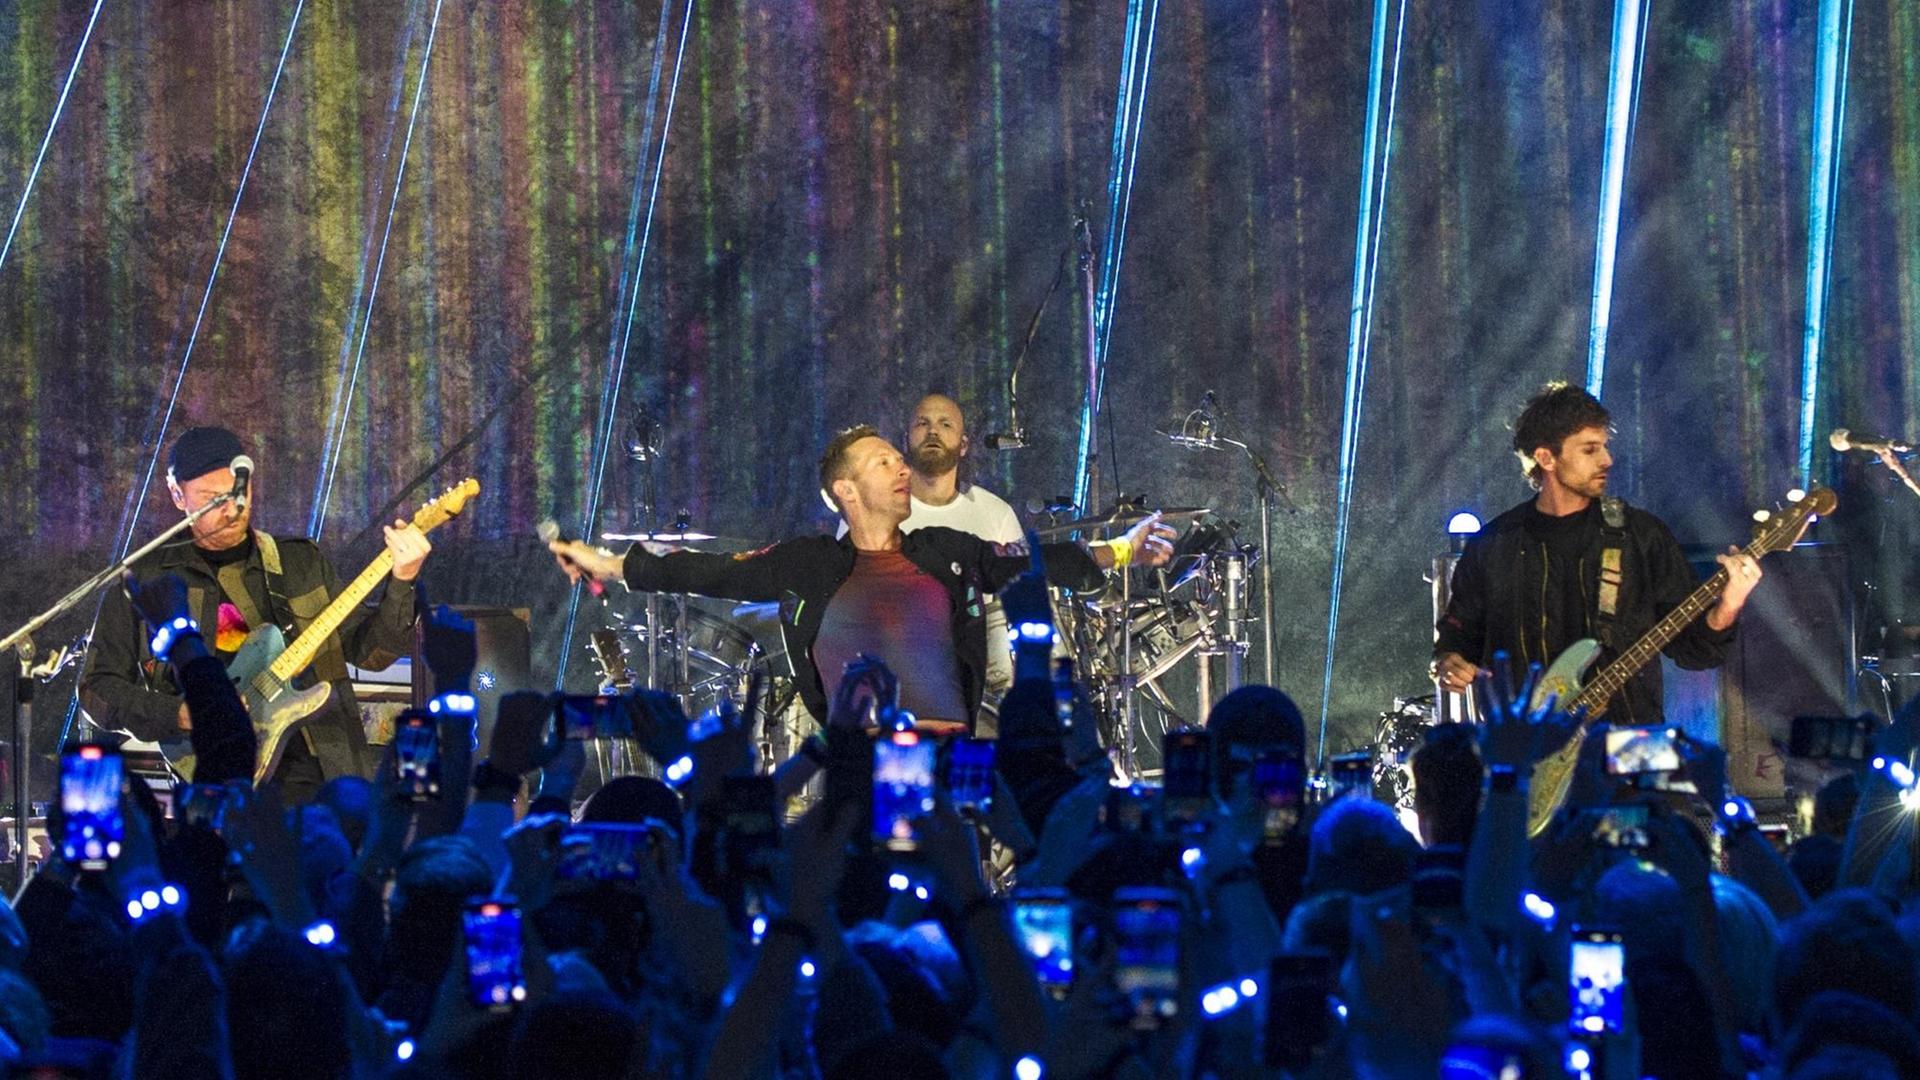 Die britische Band Coldplay präsentiert im Oktober 2021 in einem Konzert in London ihr neues Album "Music of the Spheres". Zu sehen sind (v.l.n.r.): Jonny Buckland, Gitarre, Frontmann Chris Martin, Will Champion, Schlagzeug, und Guy Berryman, Bass.